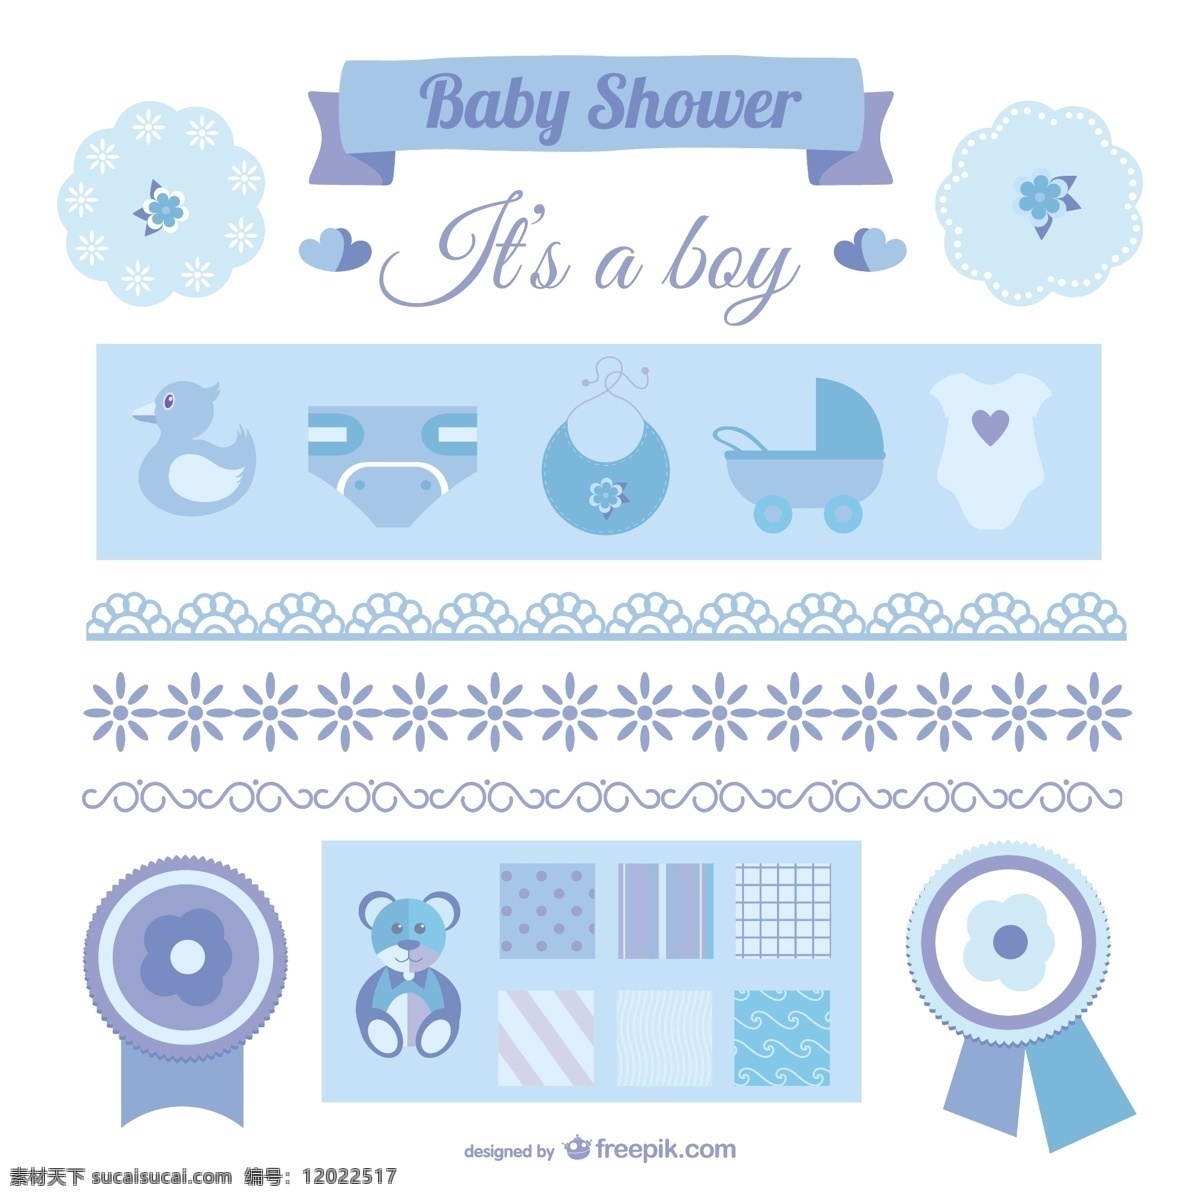 这是 一个 男孩 公告 元素 婴儿 花卉 图标 儿童 徽章 婴儿淋浴 花边 蓝色 平面 可爱 图形 衣服 图形设计 甜 白色